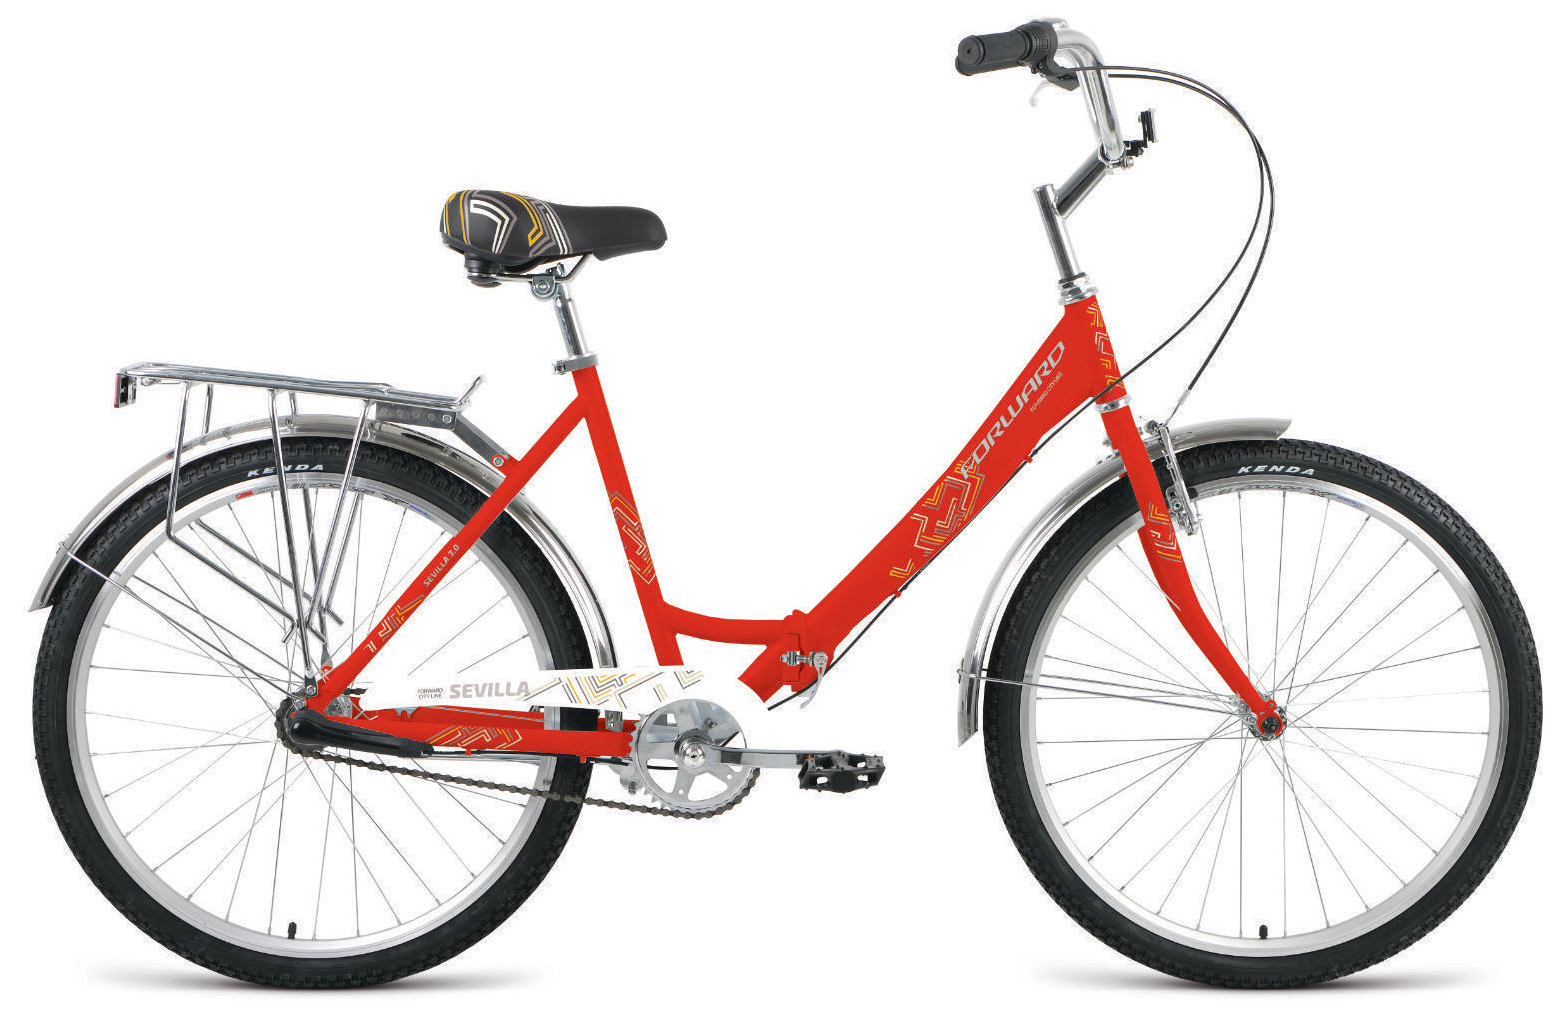  Отзывы о Городском велосипеде Forward Sevilla 26 3.0 2020